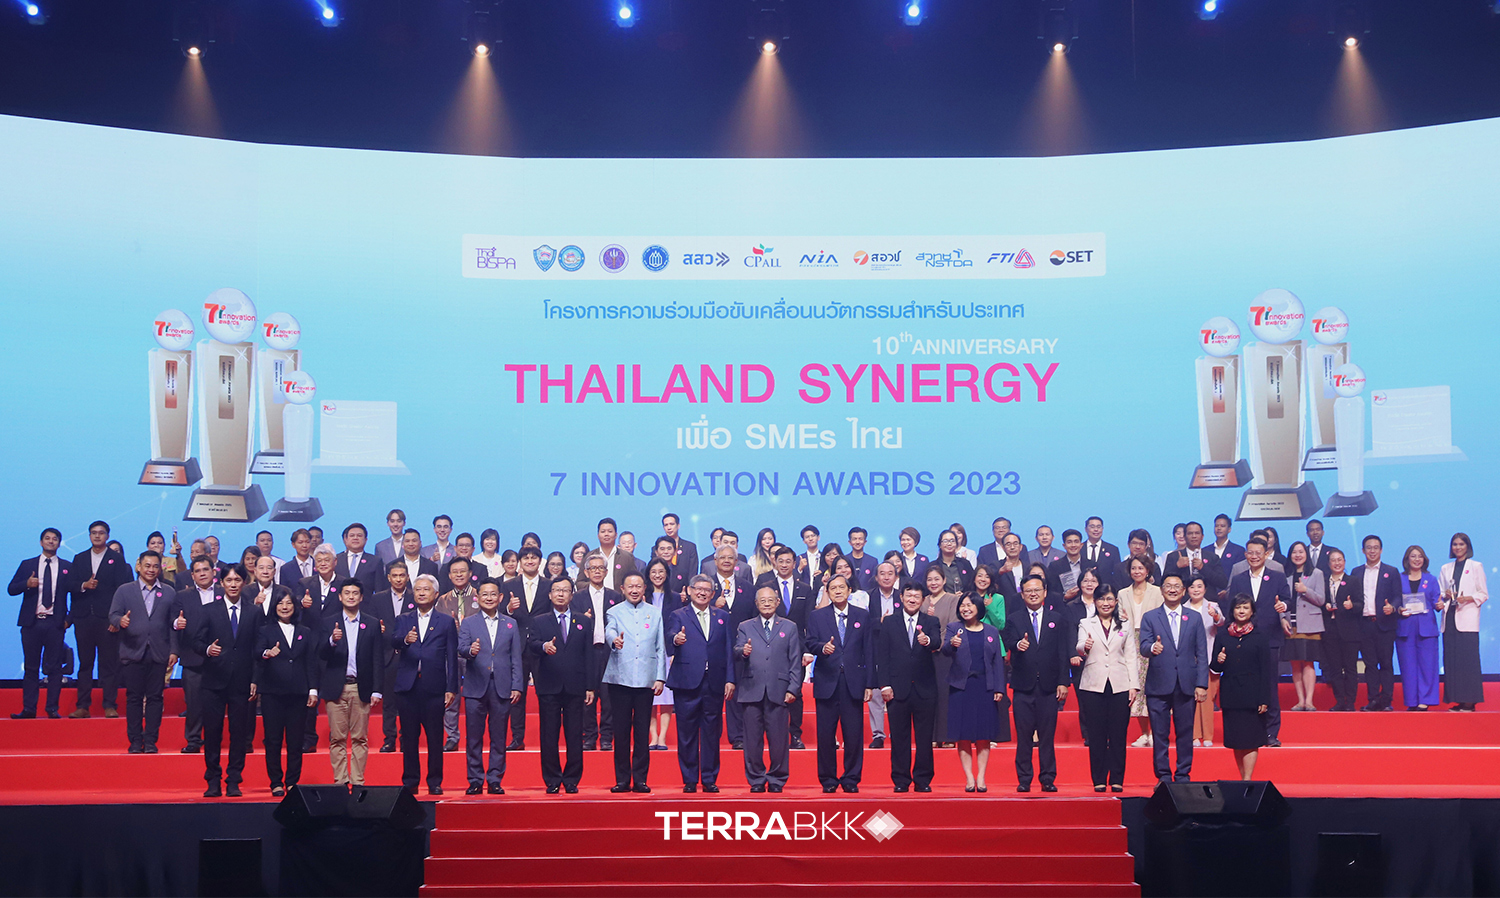 10 องค์กรรัฐ-เอกชนจับมือเซเว่นฯ มอบรางวัล “7 Innovation Awards 2023” ปีที่ 10 หนุนนวัตกรรม SMEs ไทยสร้างพลังเปลี่ยนโลก ขับเคลื่อนเศรษฐกิจ-สังคมไทยอย่างยั่งยืน